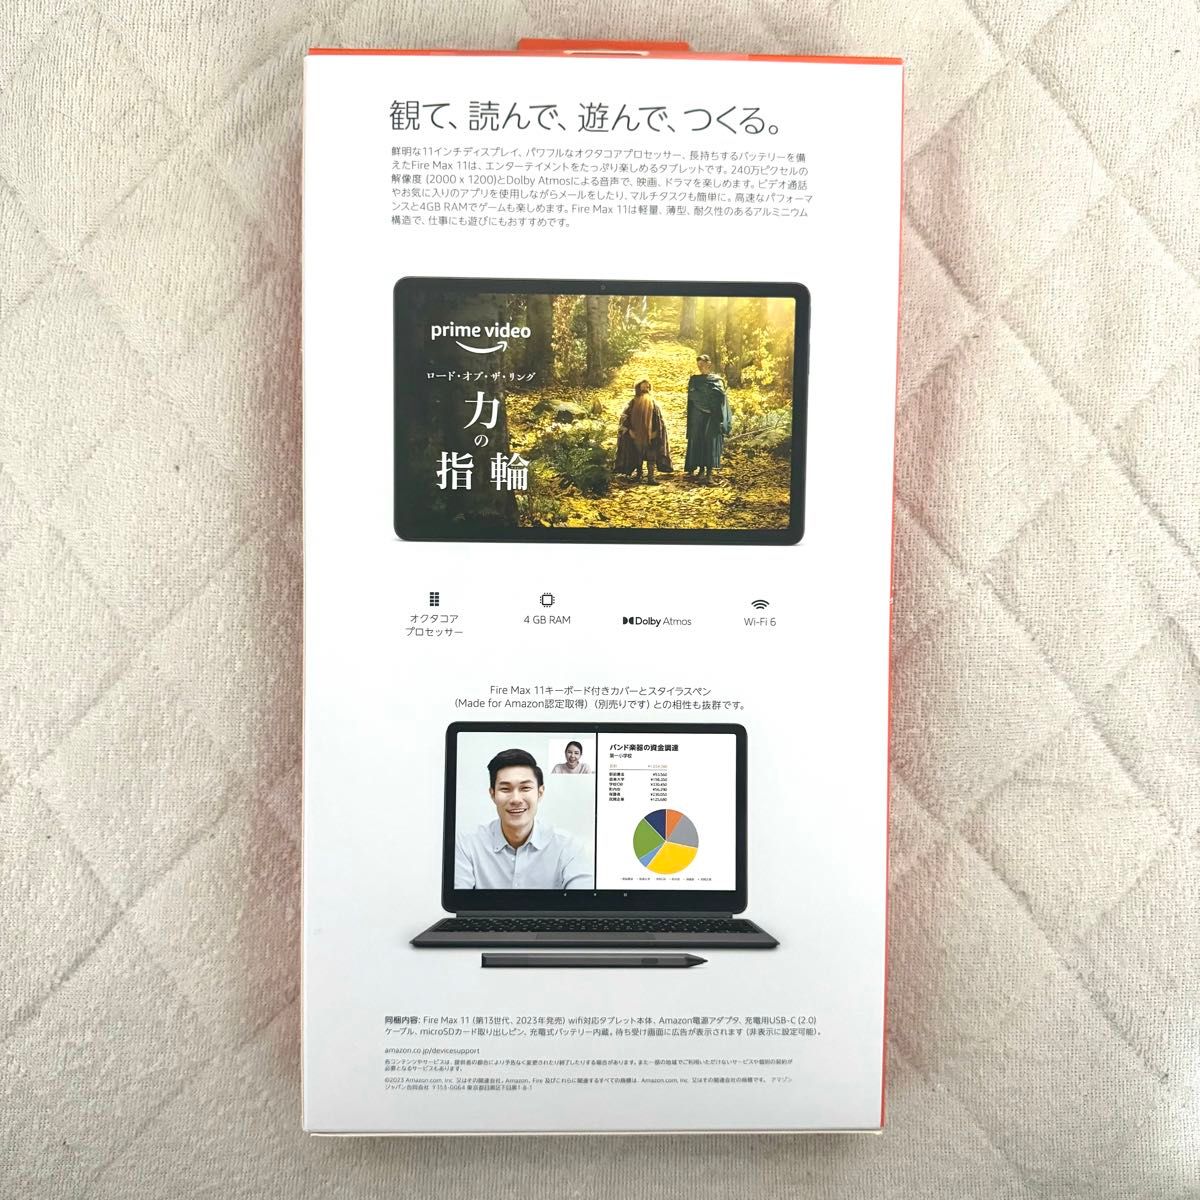 【新品未開封】アマゾン Fire Max 11 タブレット 64GB 